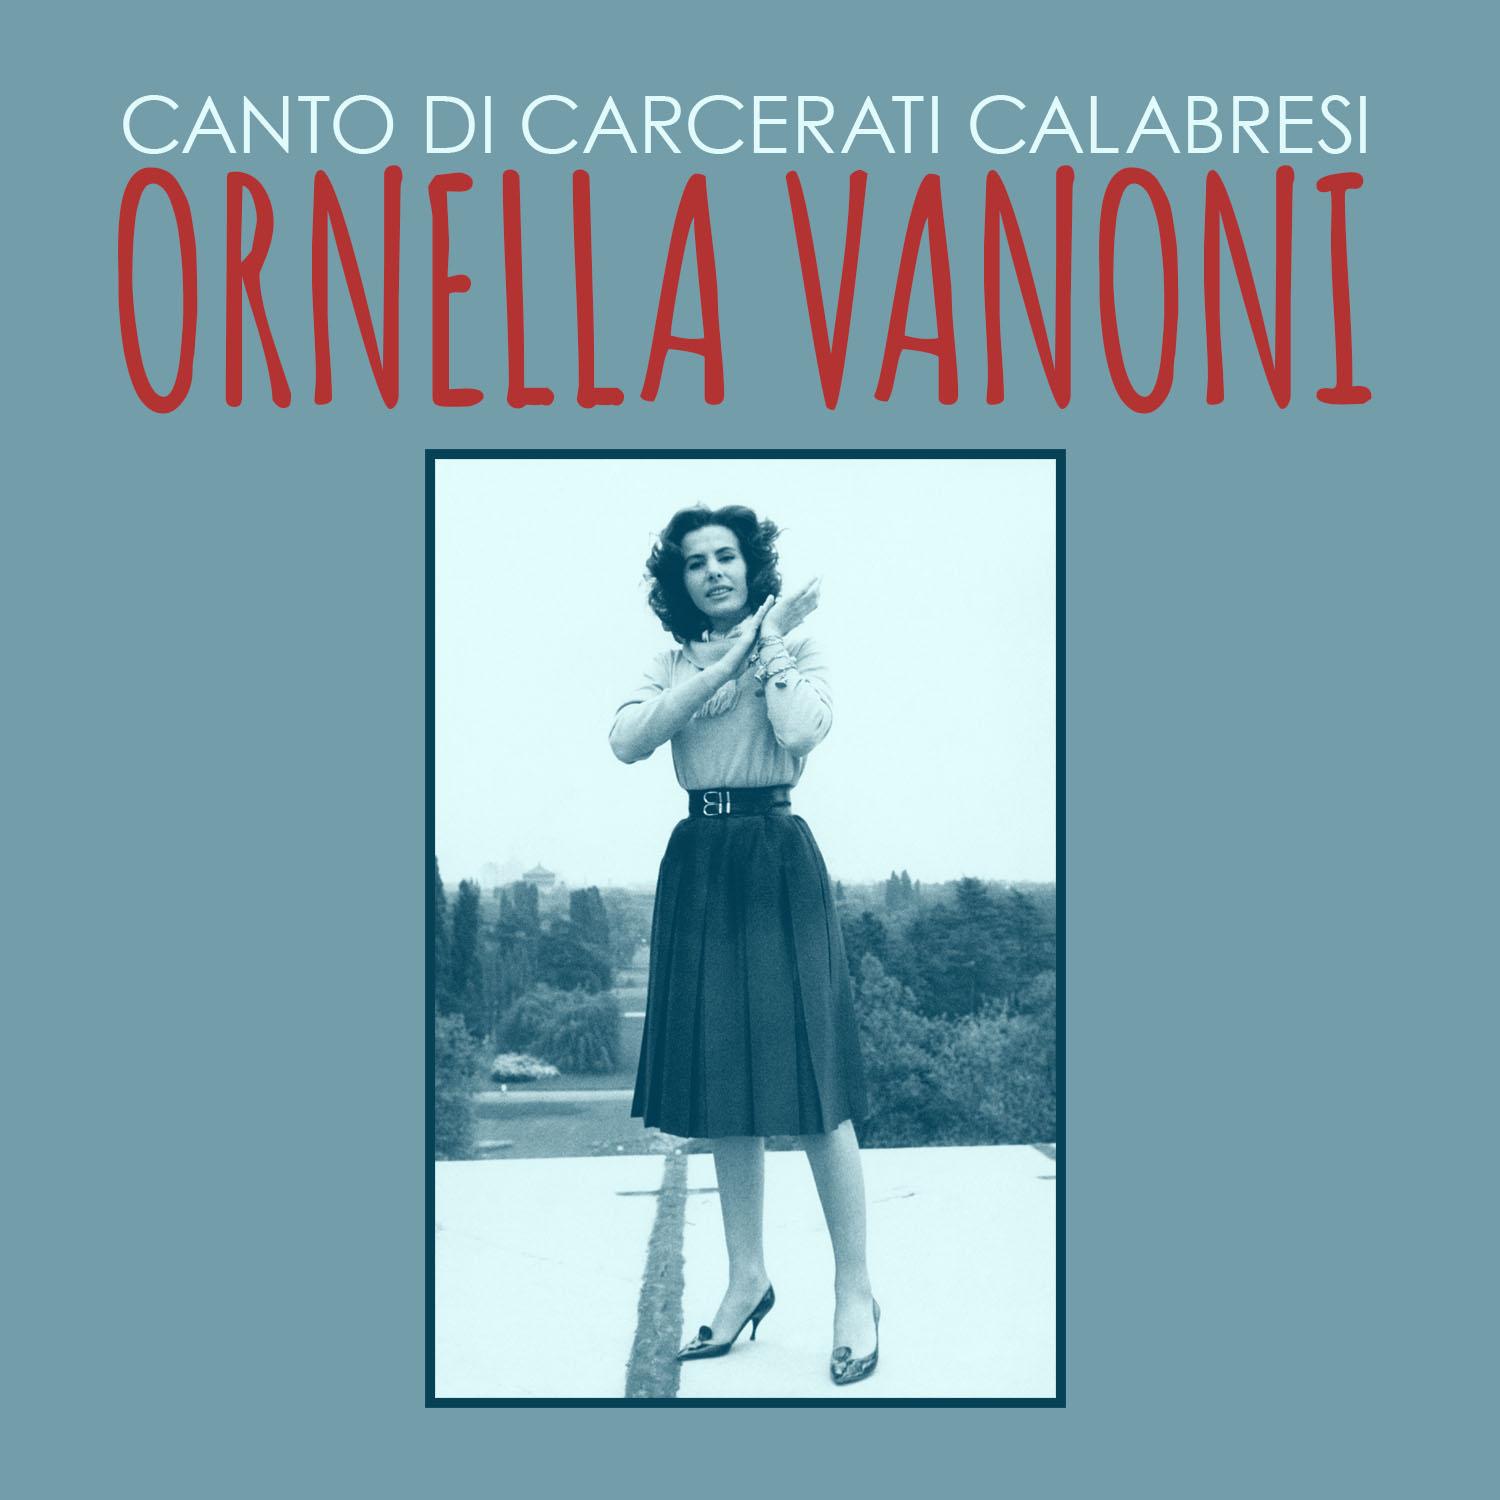 Canto di carcerati calabresi专辑